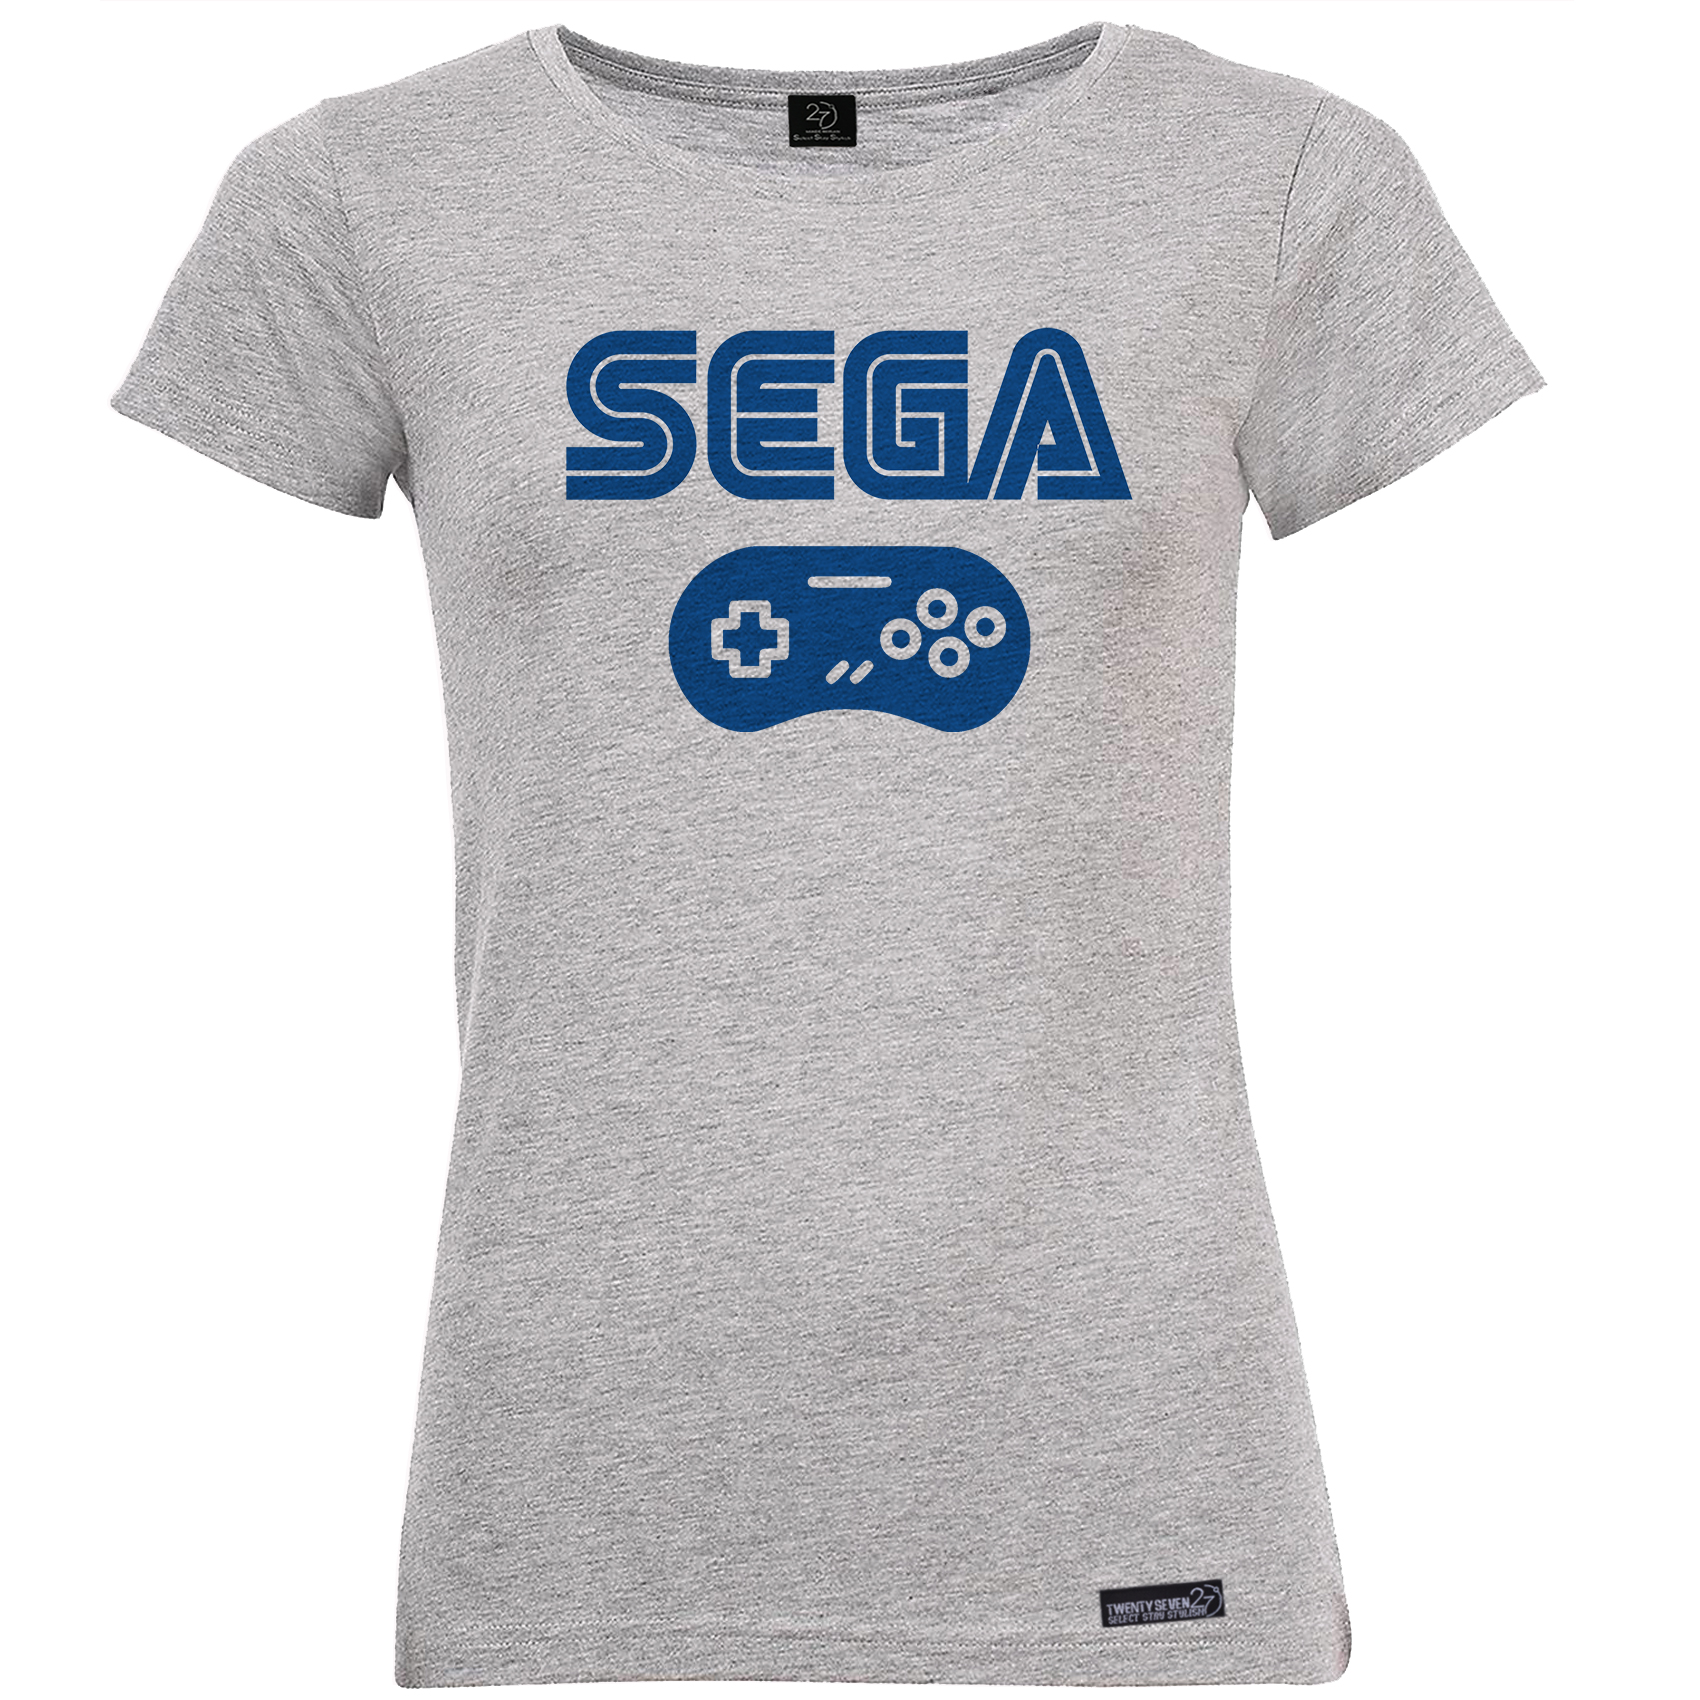 تی شرت آستین کوتاه زنانه 27 مدل SEGA کد MH31